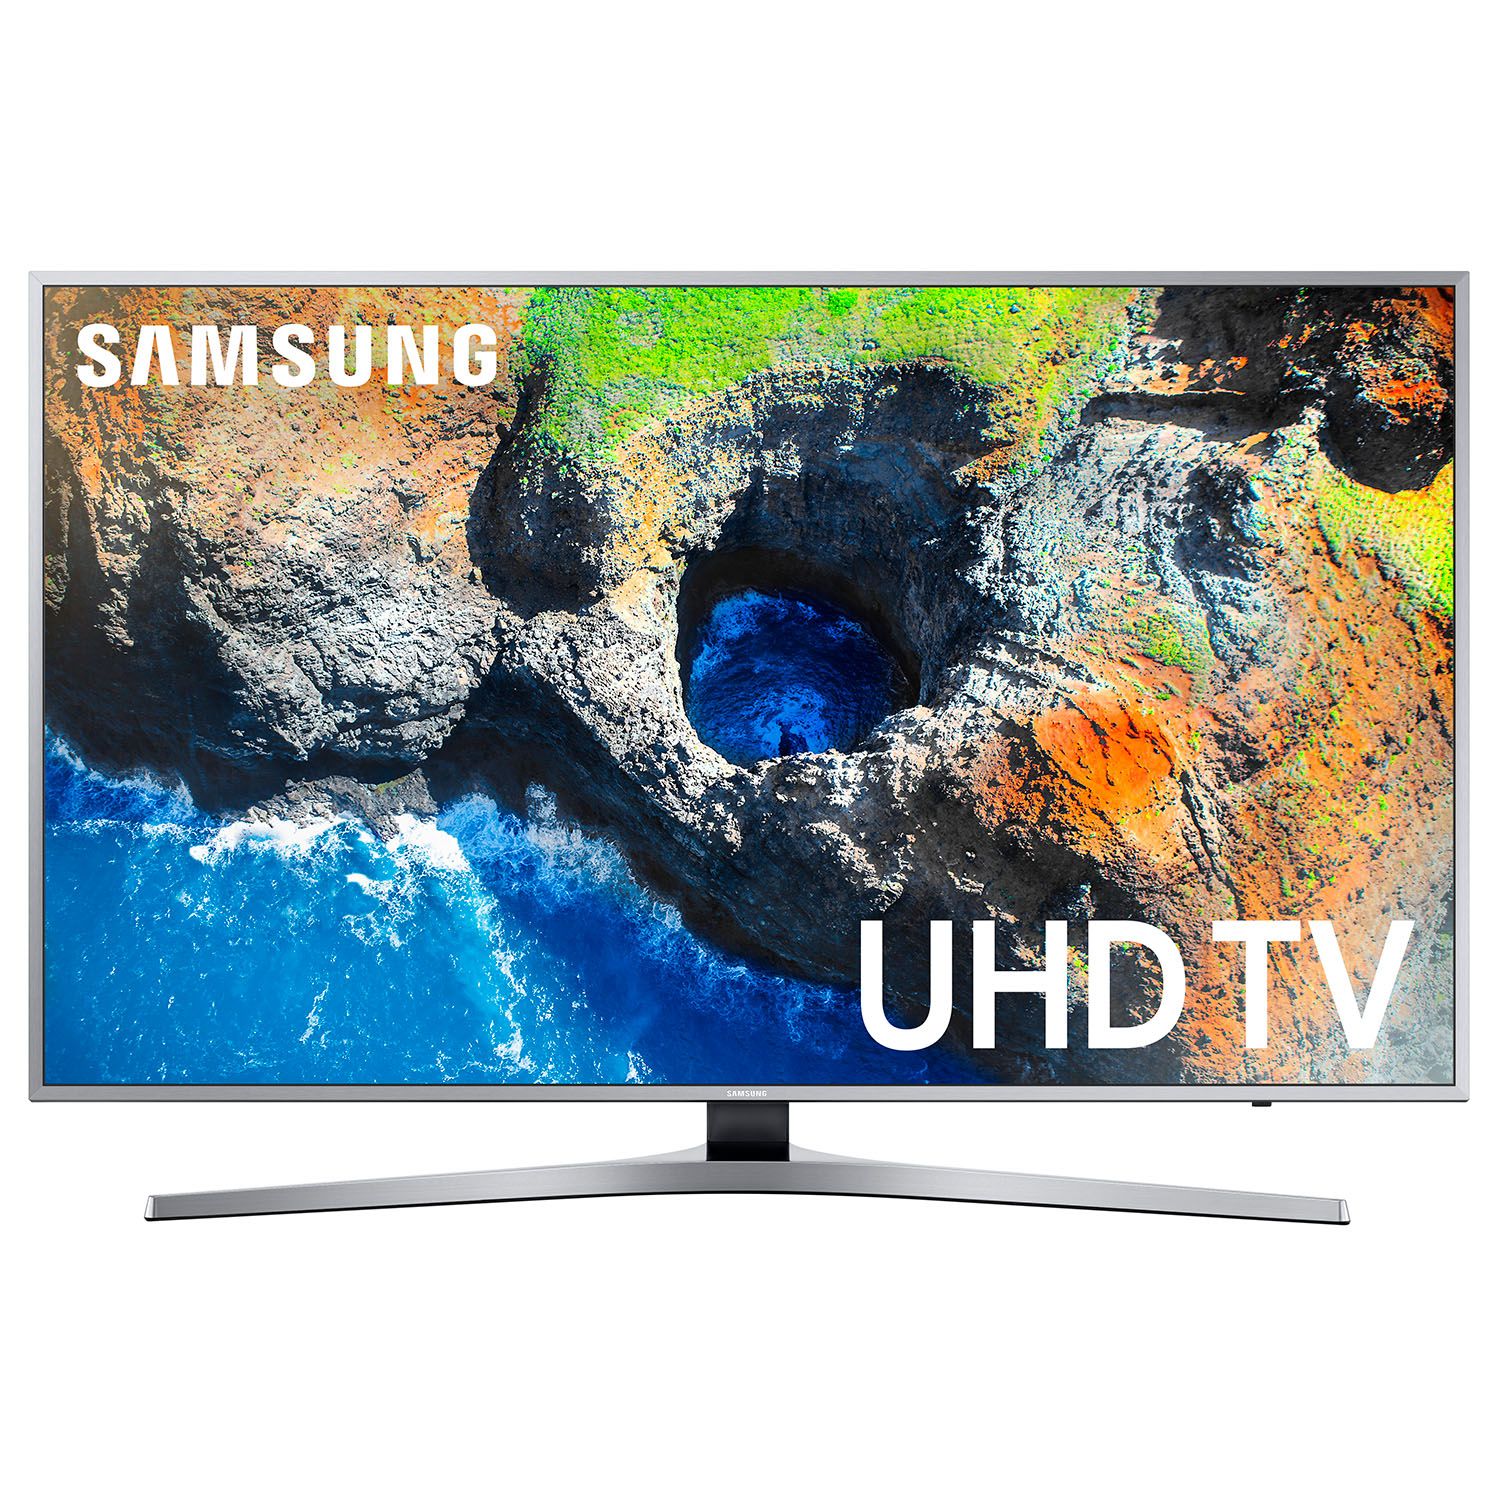 Samsung UN49MU7000 49″ 4K Smart Ultra HDTV with High Dynamic Range